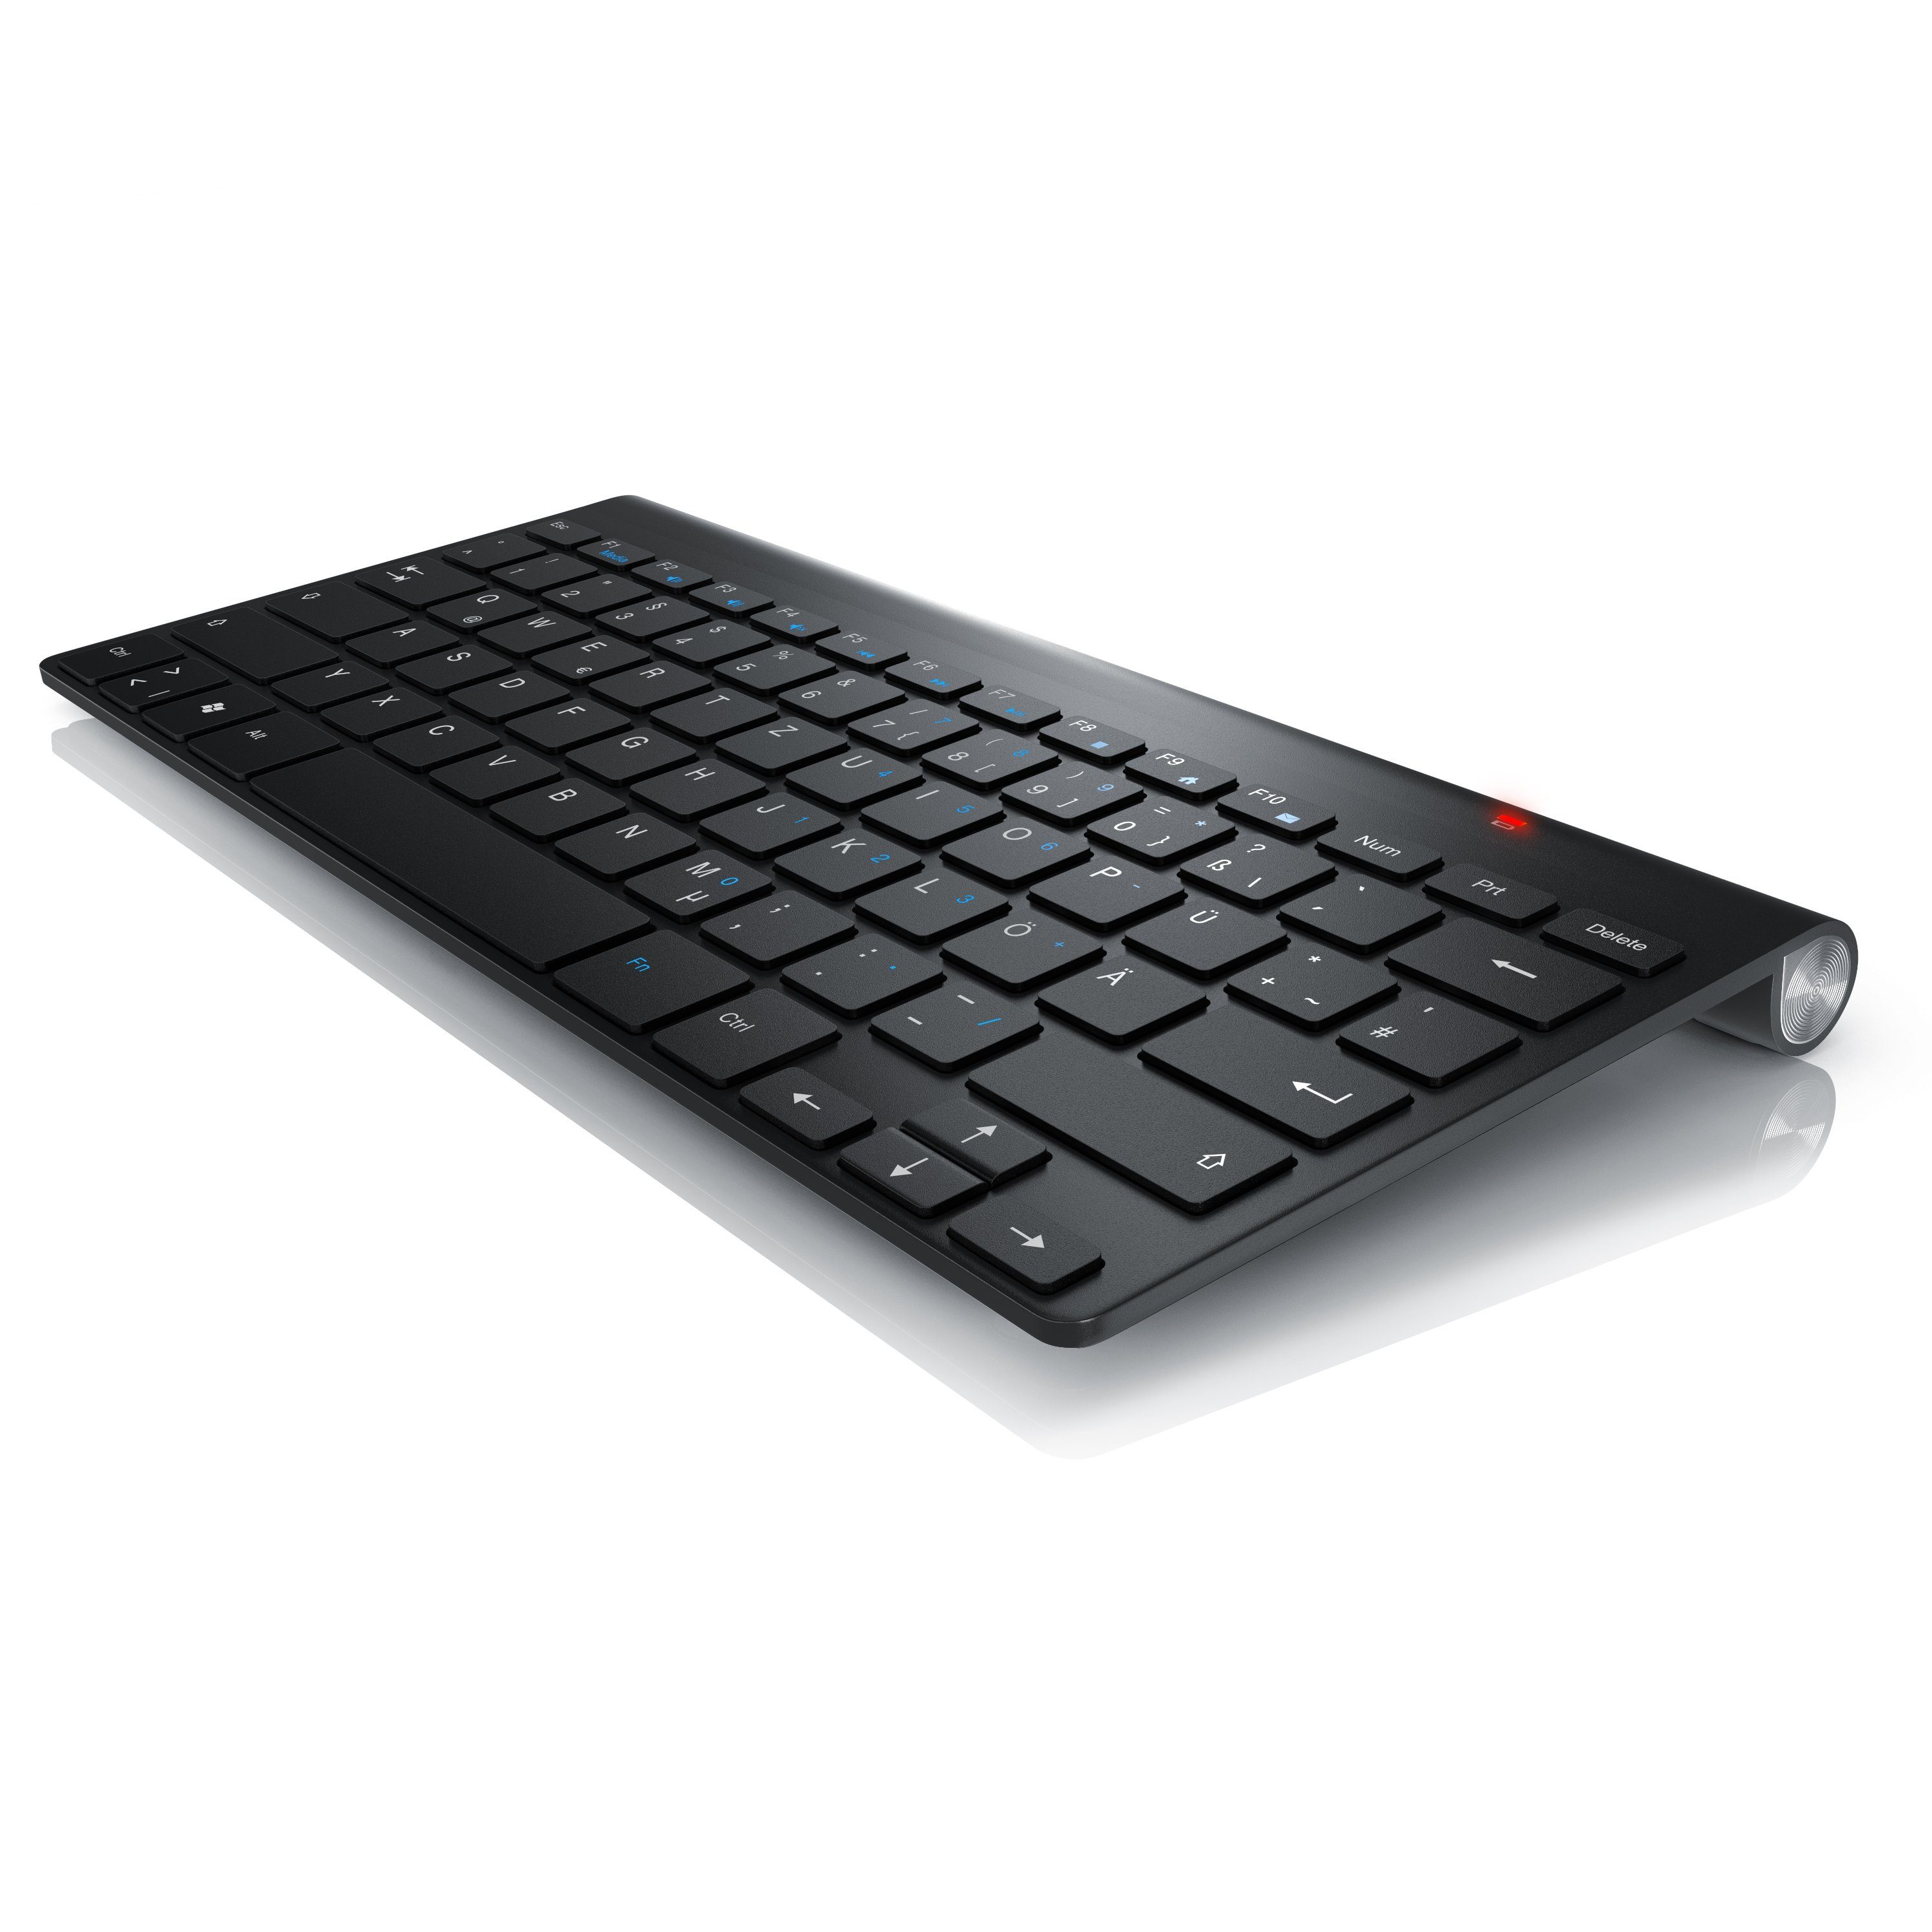 Wireless-Tastatur 2,4GHz, Layout) Keyboard (kabelloses QWERTZ Tastaturlayout, Windows Aplic Slim